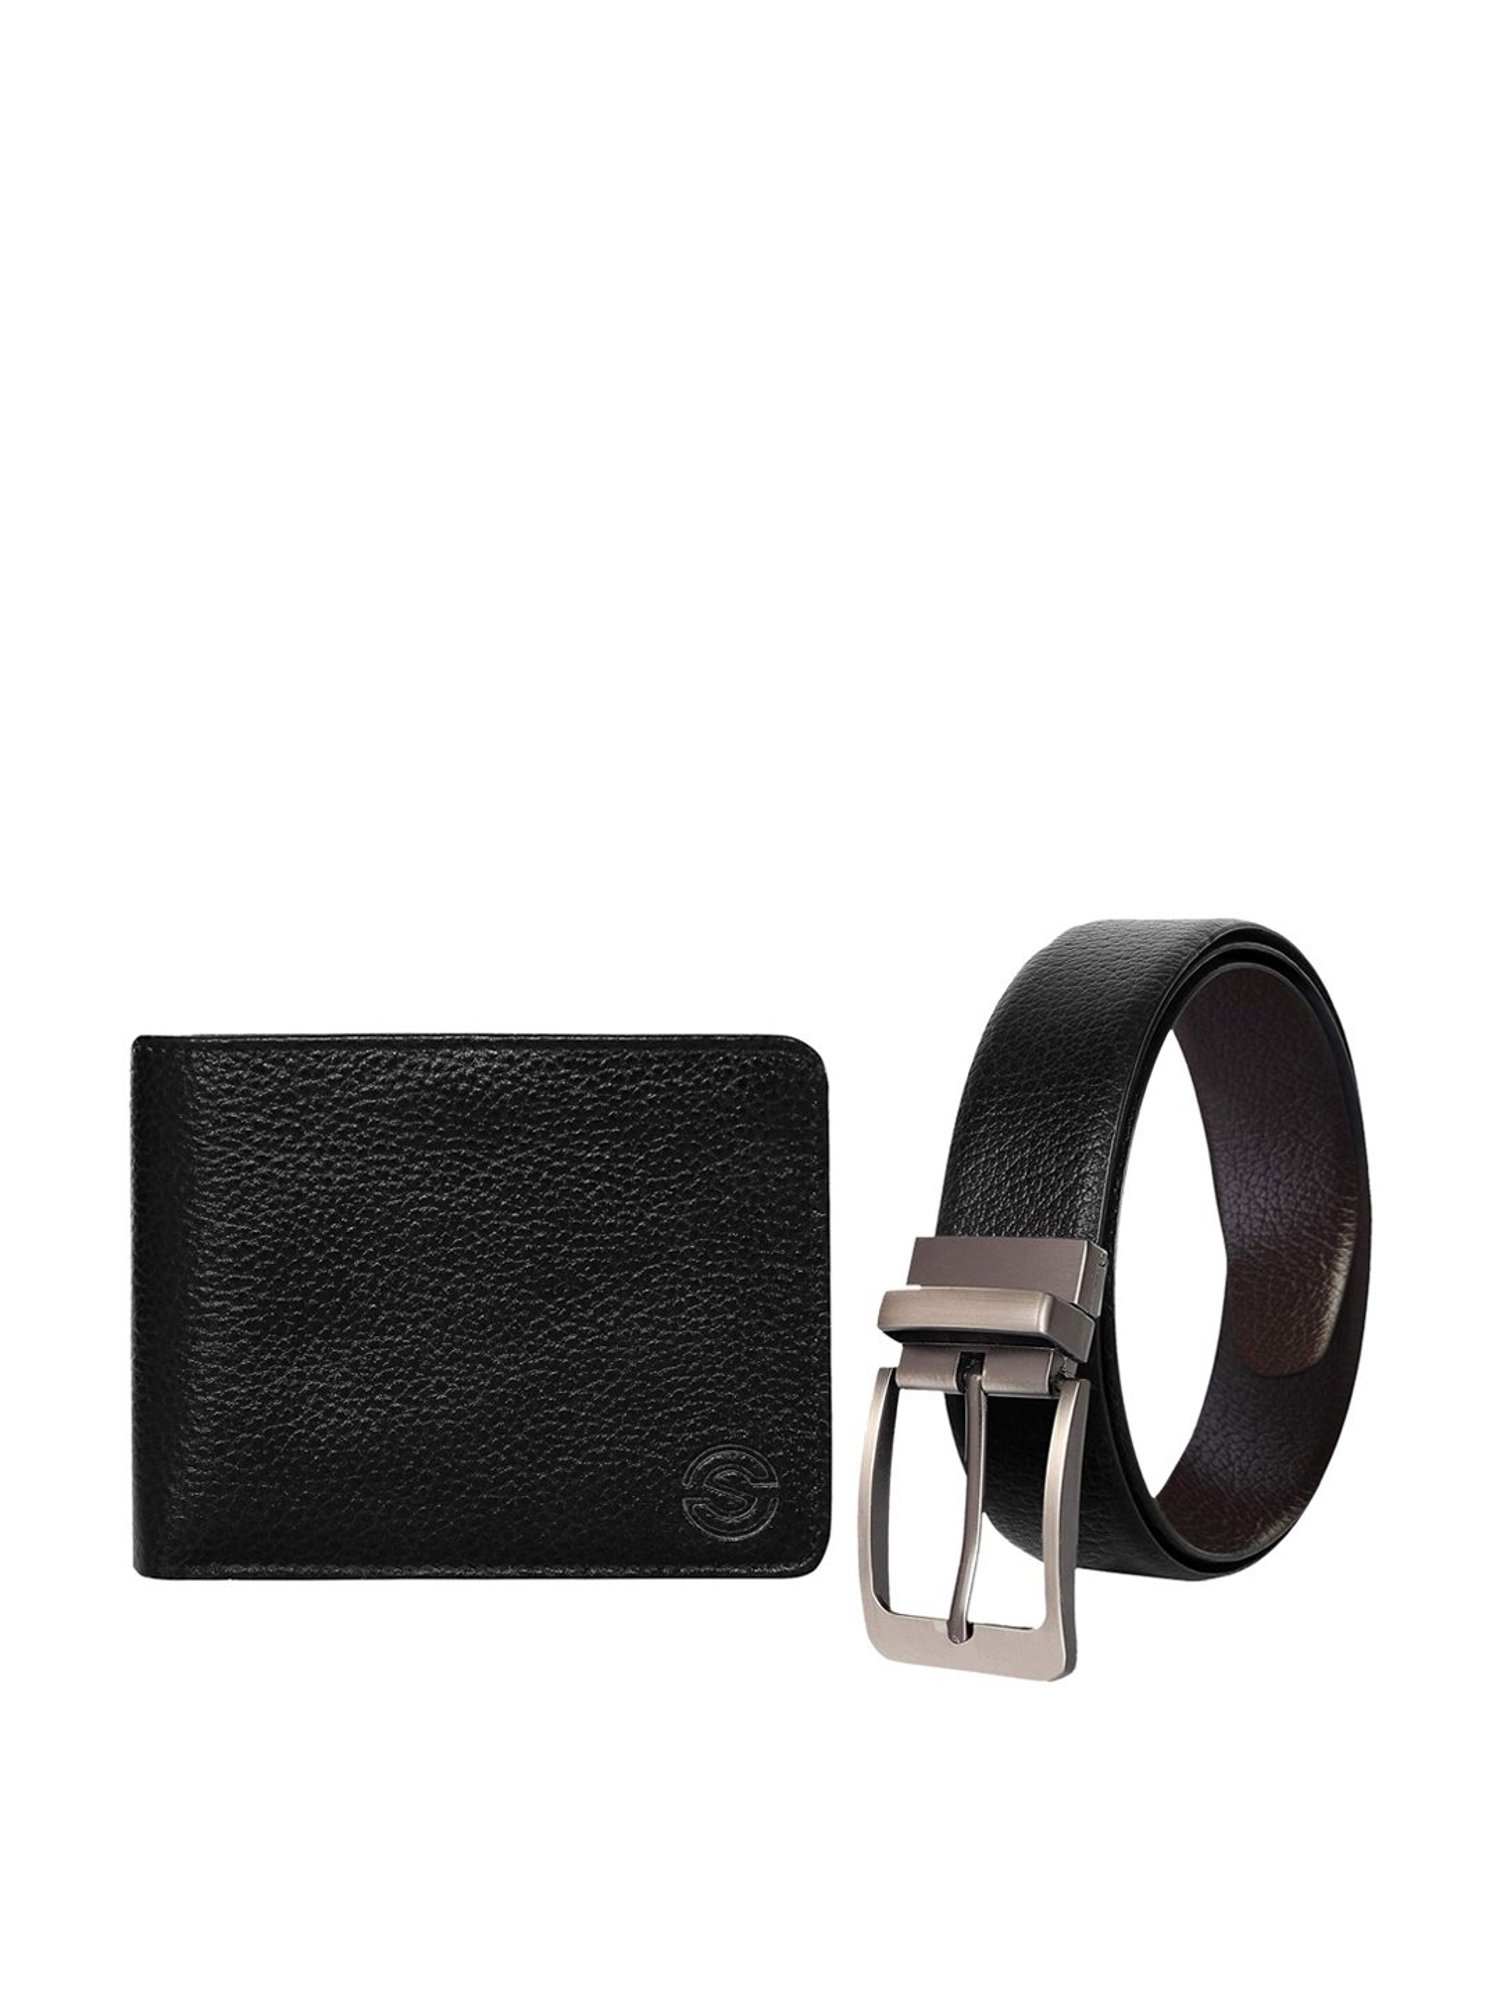 GG Supreme / Black Leather Reversible Belt